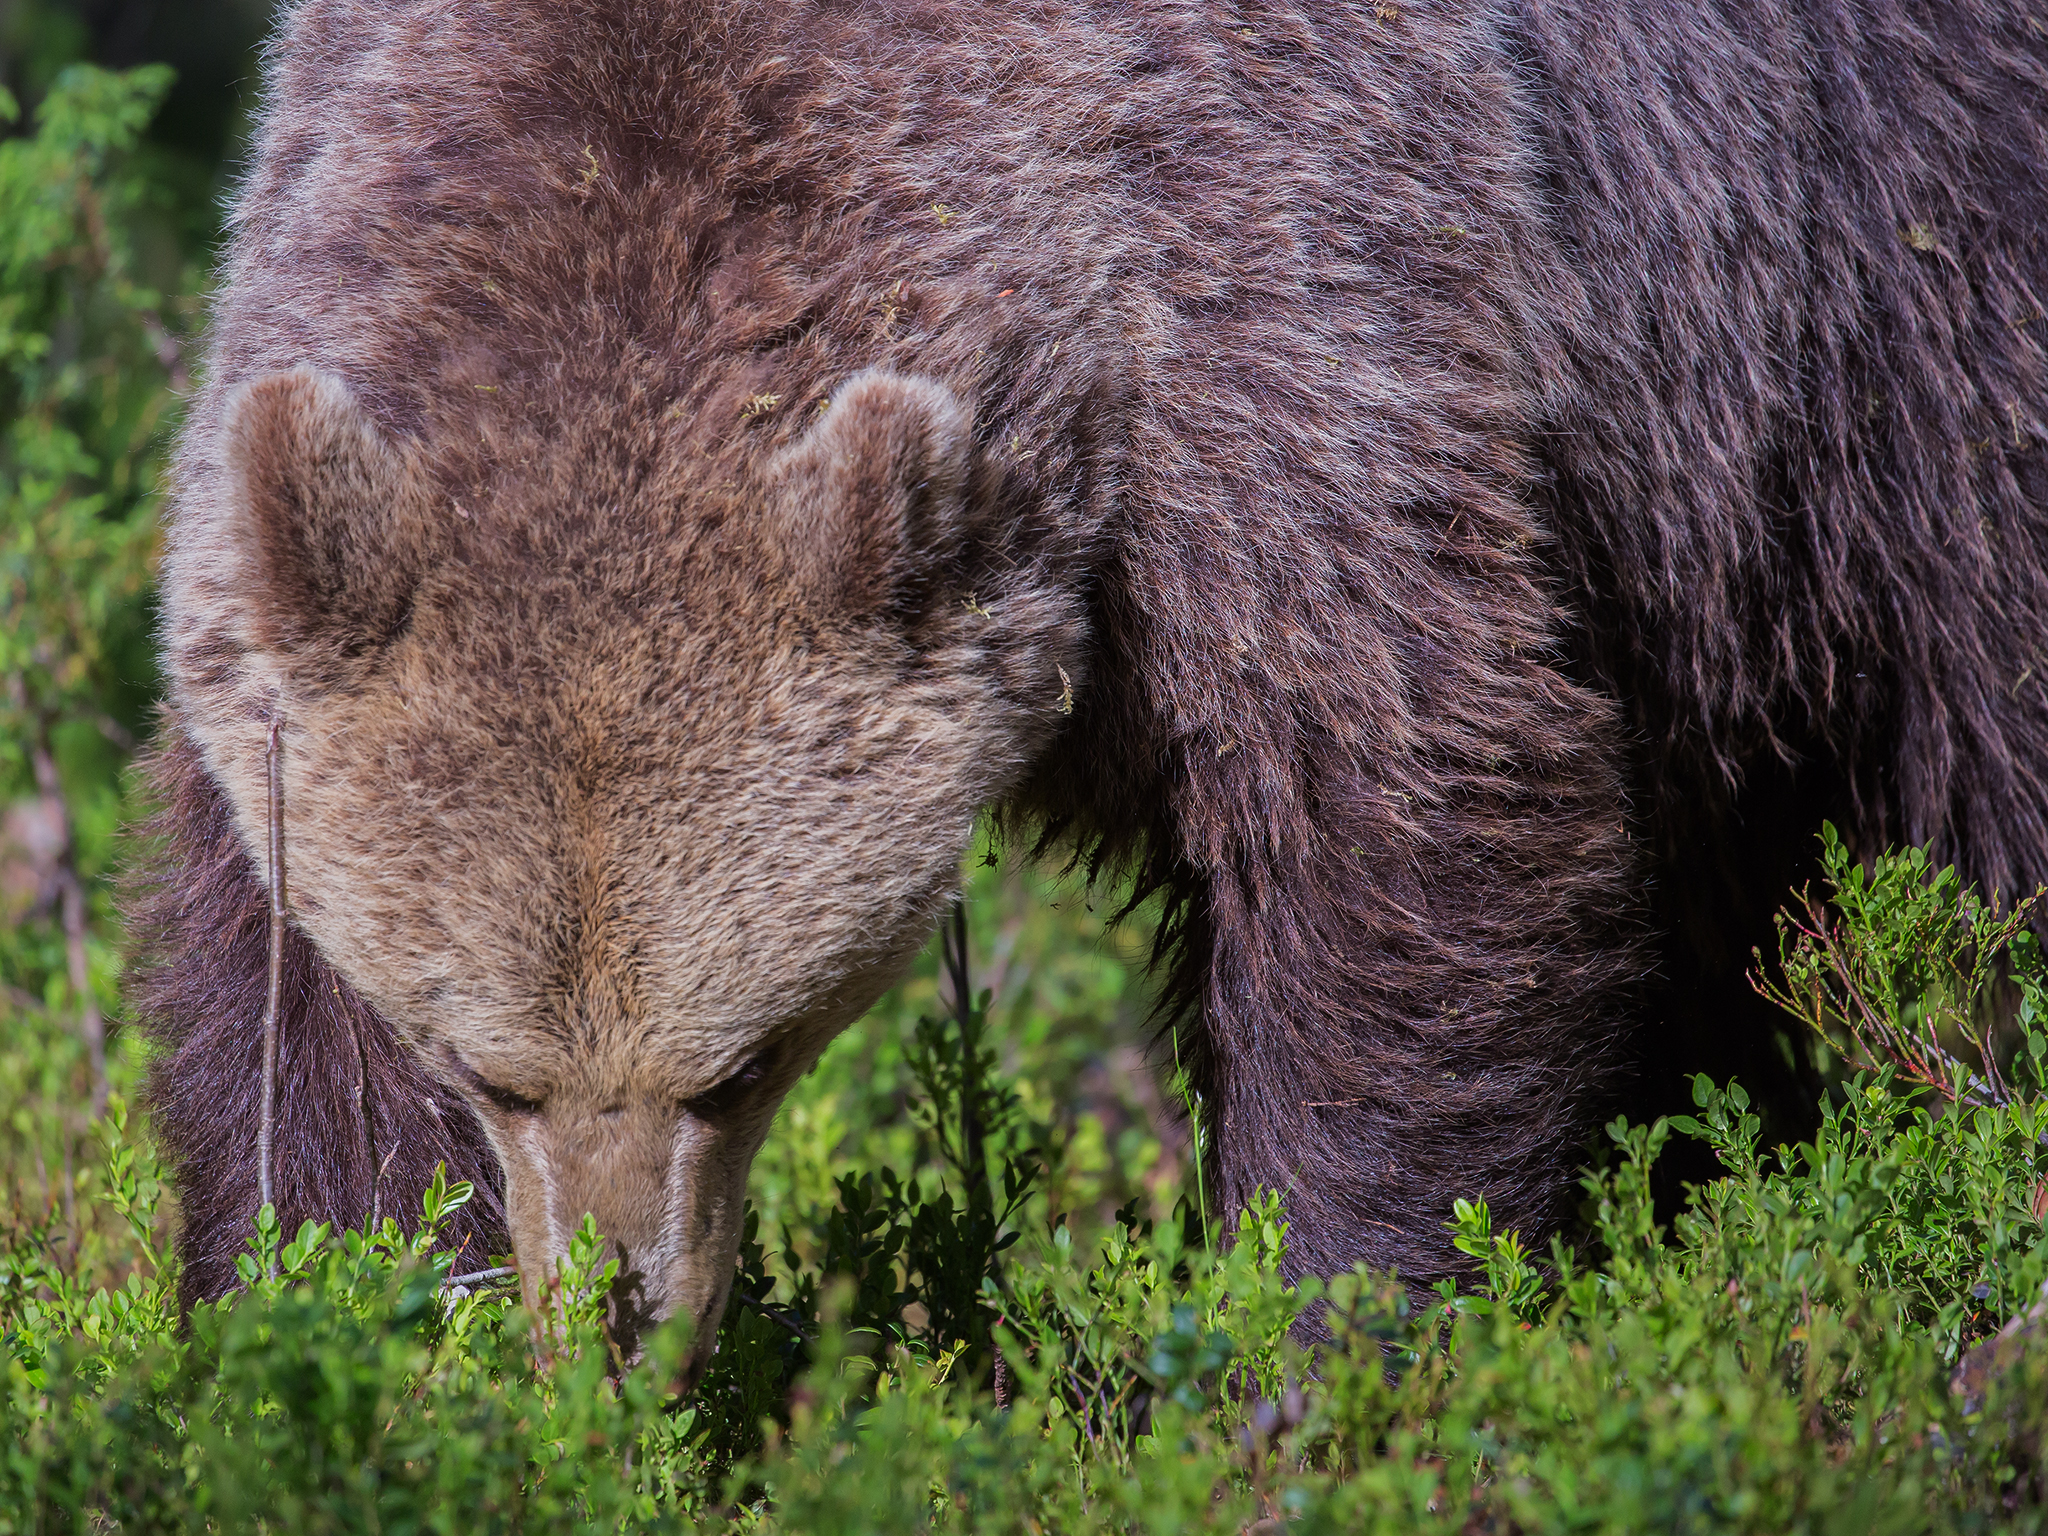   Skjulet i skogen.     I 2015 viste DNA-analysene at det var minst 128 bjørner i Norge. 53 av dem var hunner og 75 var hanner.&nbsp;   